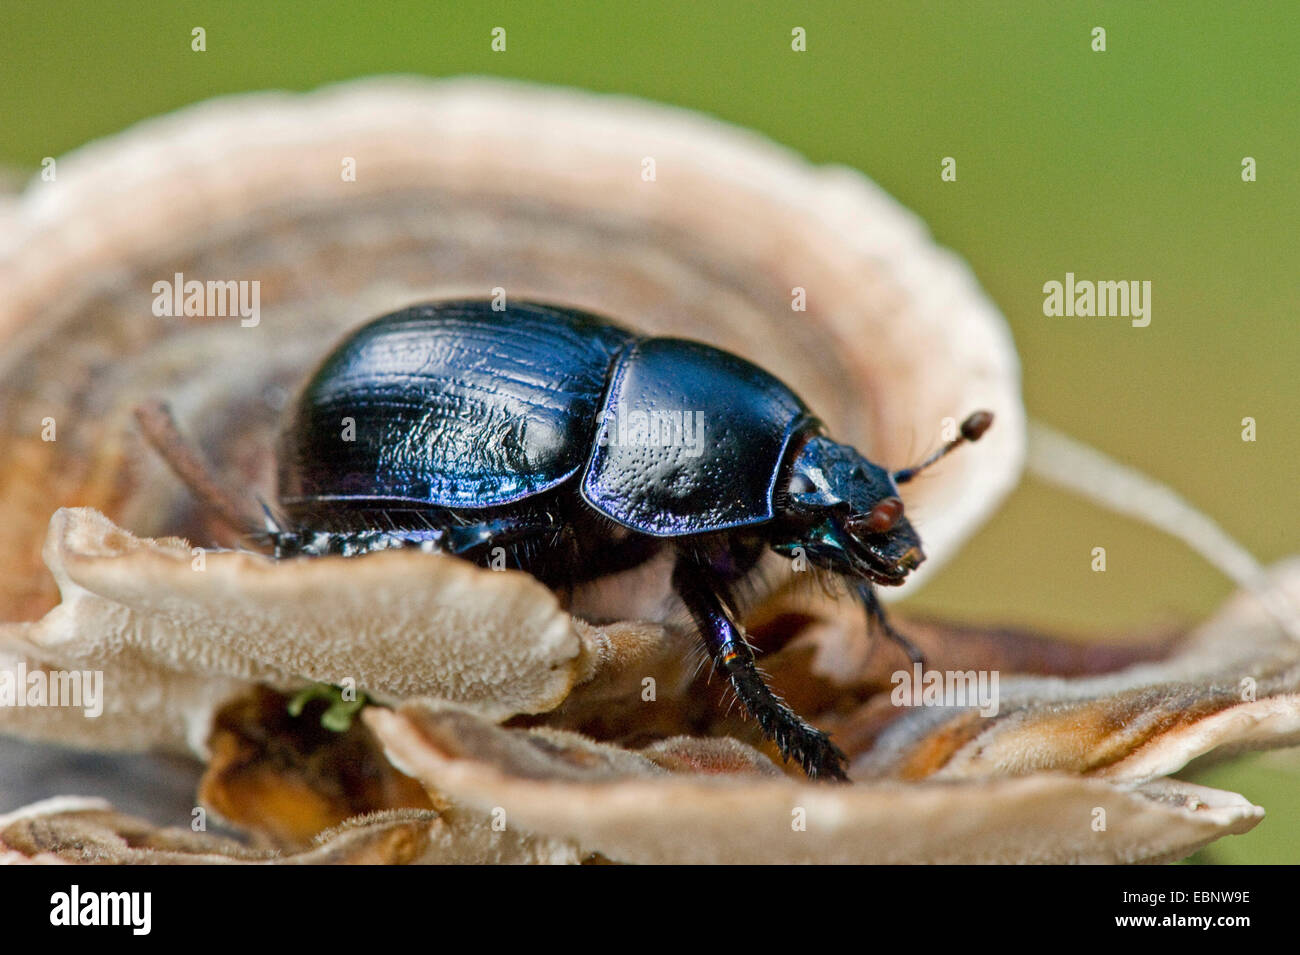 Comune di dor beetle (Anoplotrupes stercorosus, Geotrupes stercorosus), su una staffa fungo, Germania Foto Stock